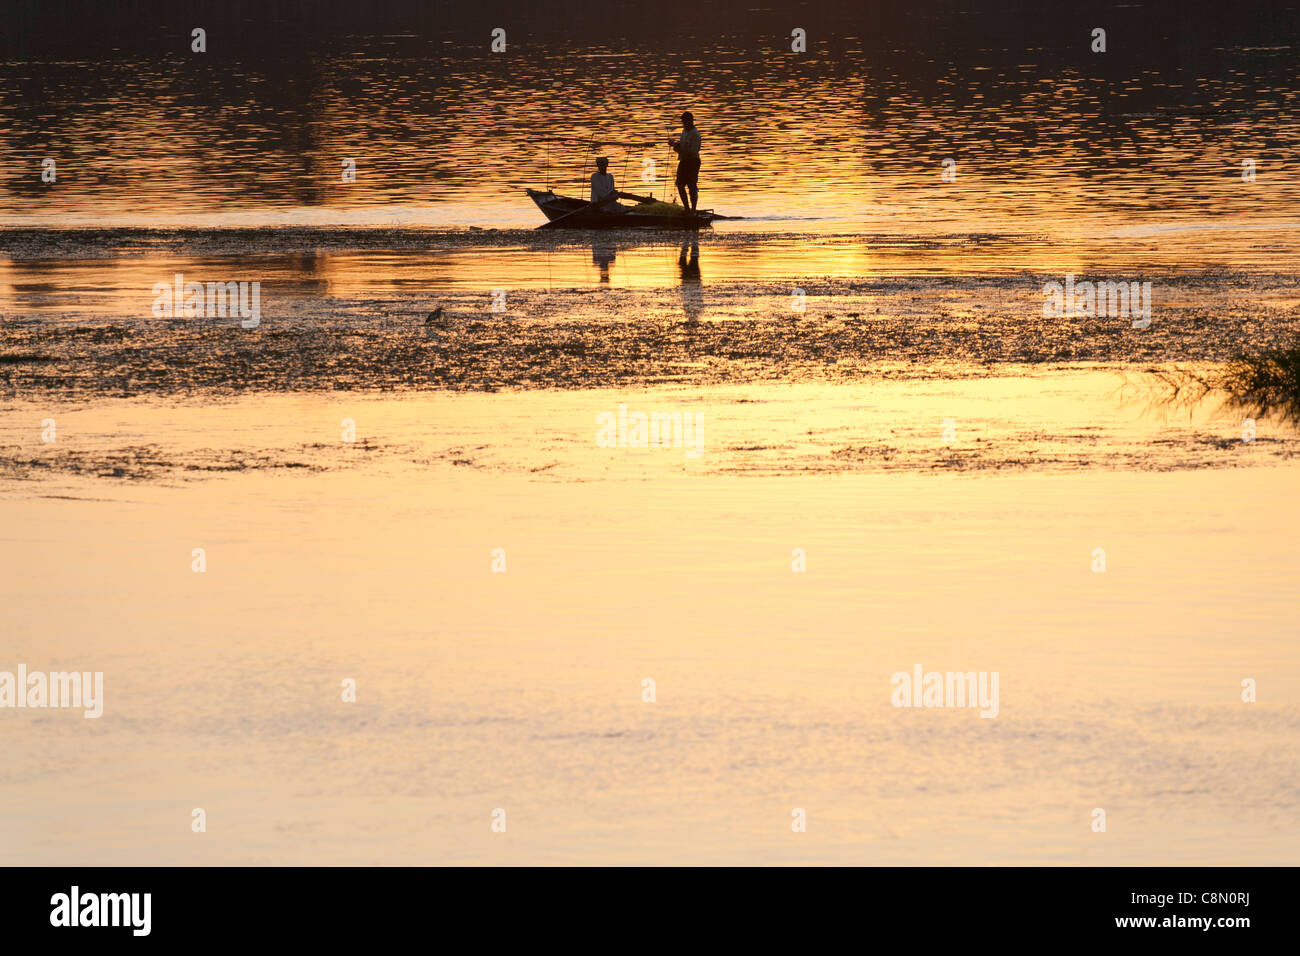 La pesca con piccole imbarcazioni con reti sul fiume Nilo in Egitto presso sun insieme dando un bagliore dorato all'acqua e scontornamento figure Foto Stock